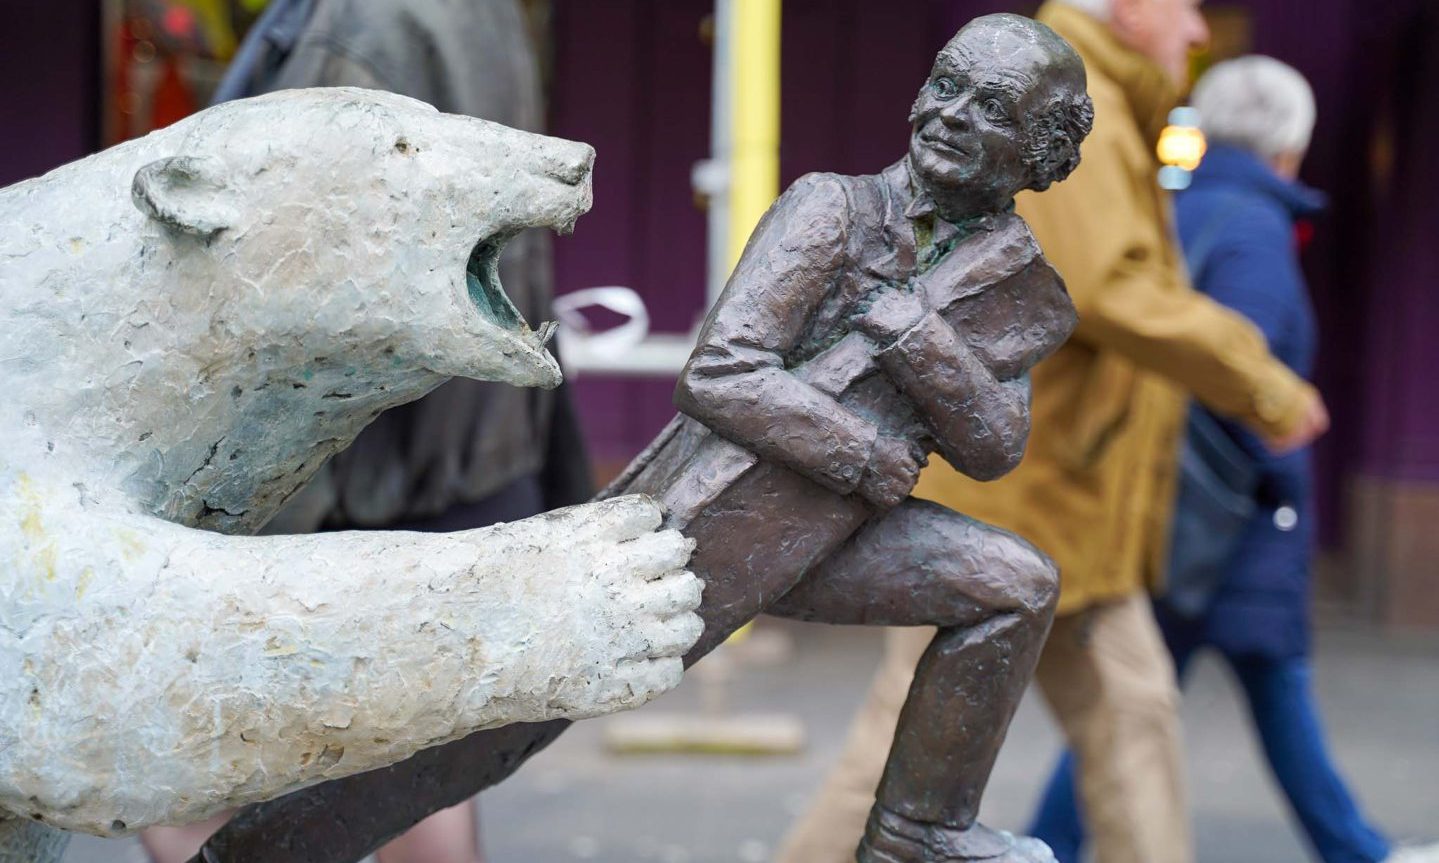 The Polar Bear statue on Dundee's High Street. Image: Alistair Heather.